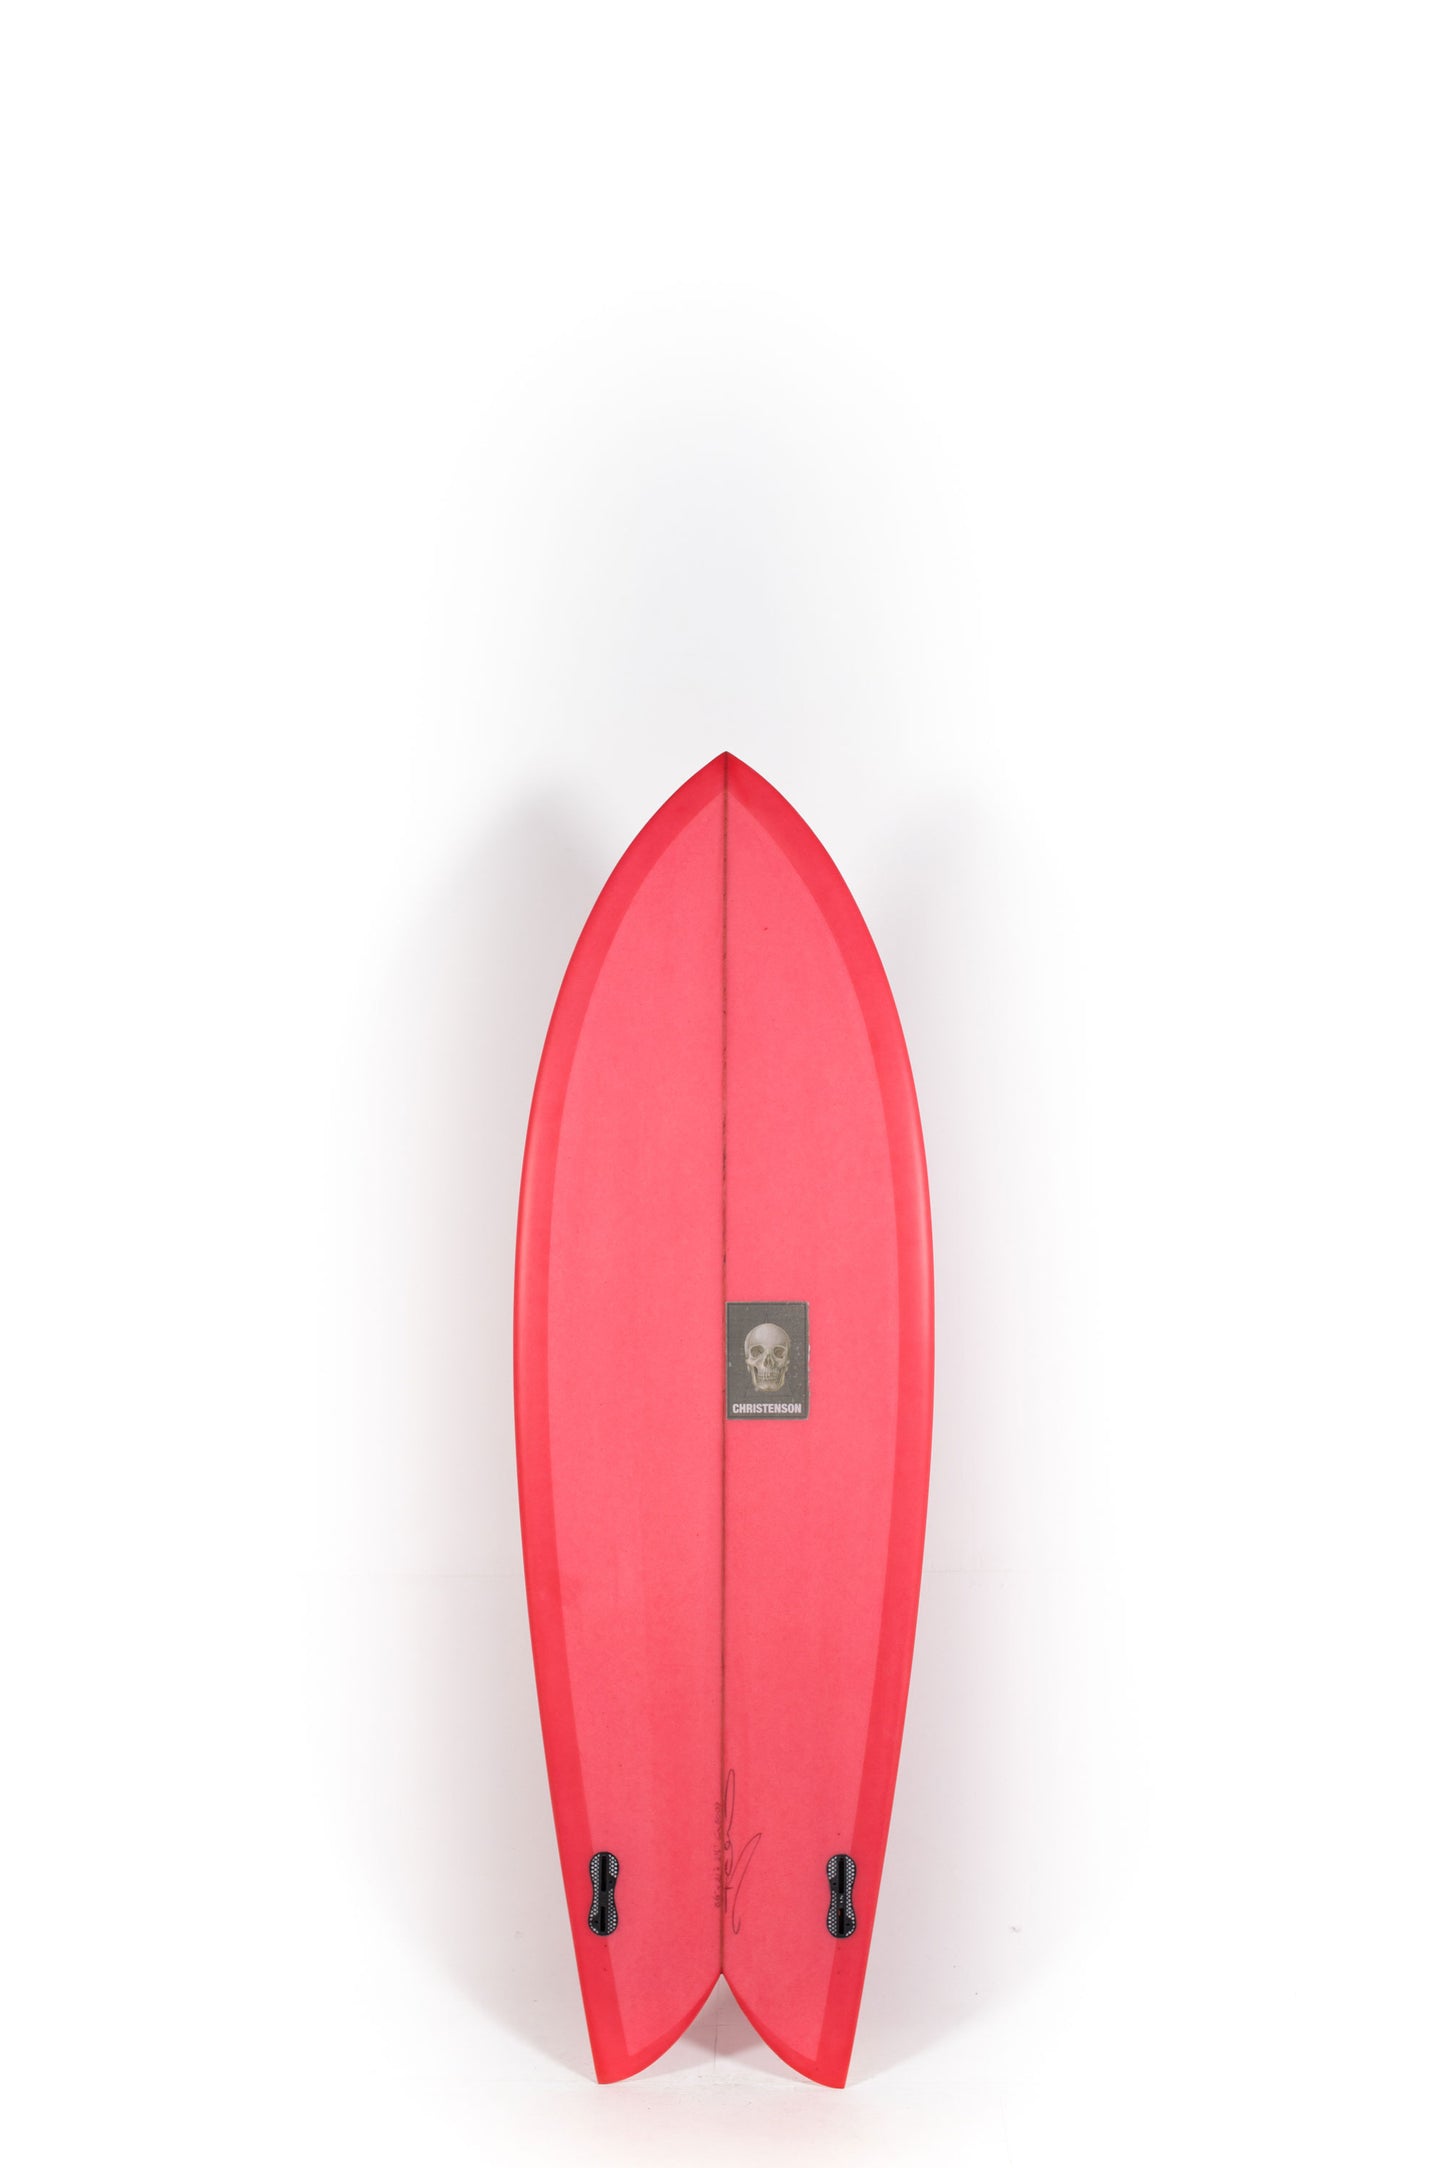 Pukas Surf Shop - Christenson Surfboards - CHRIS FISH - 5'8" x 21 x 2 1/2 - CX05009